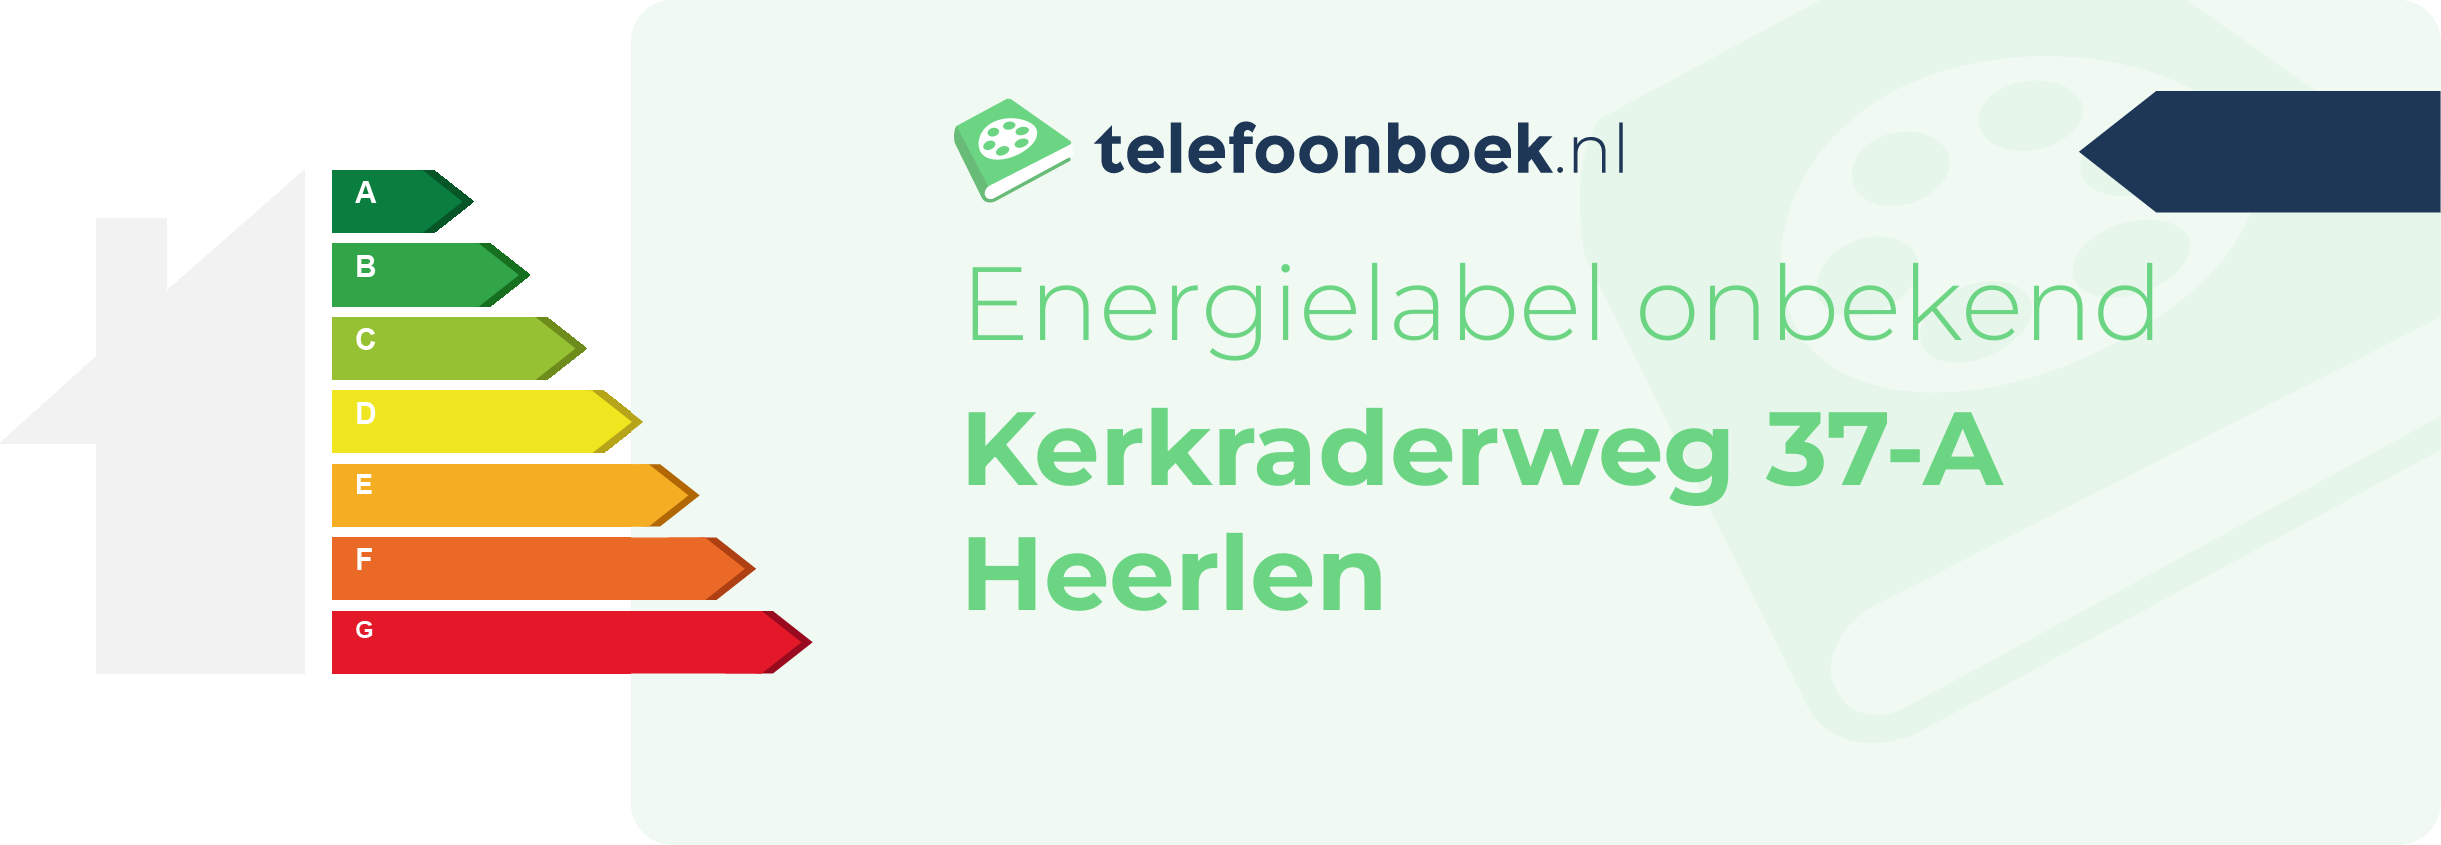 Energielabel Kerkraderweg 37-A Heerlen